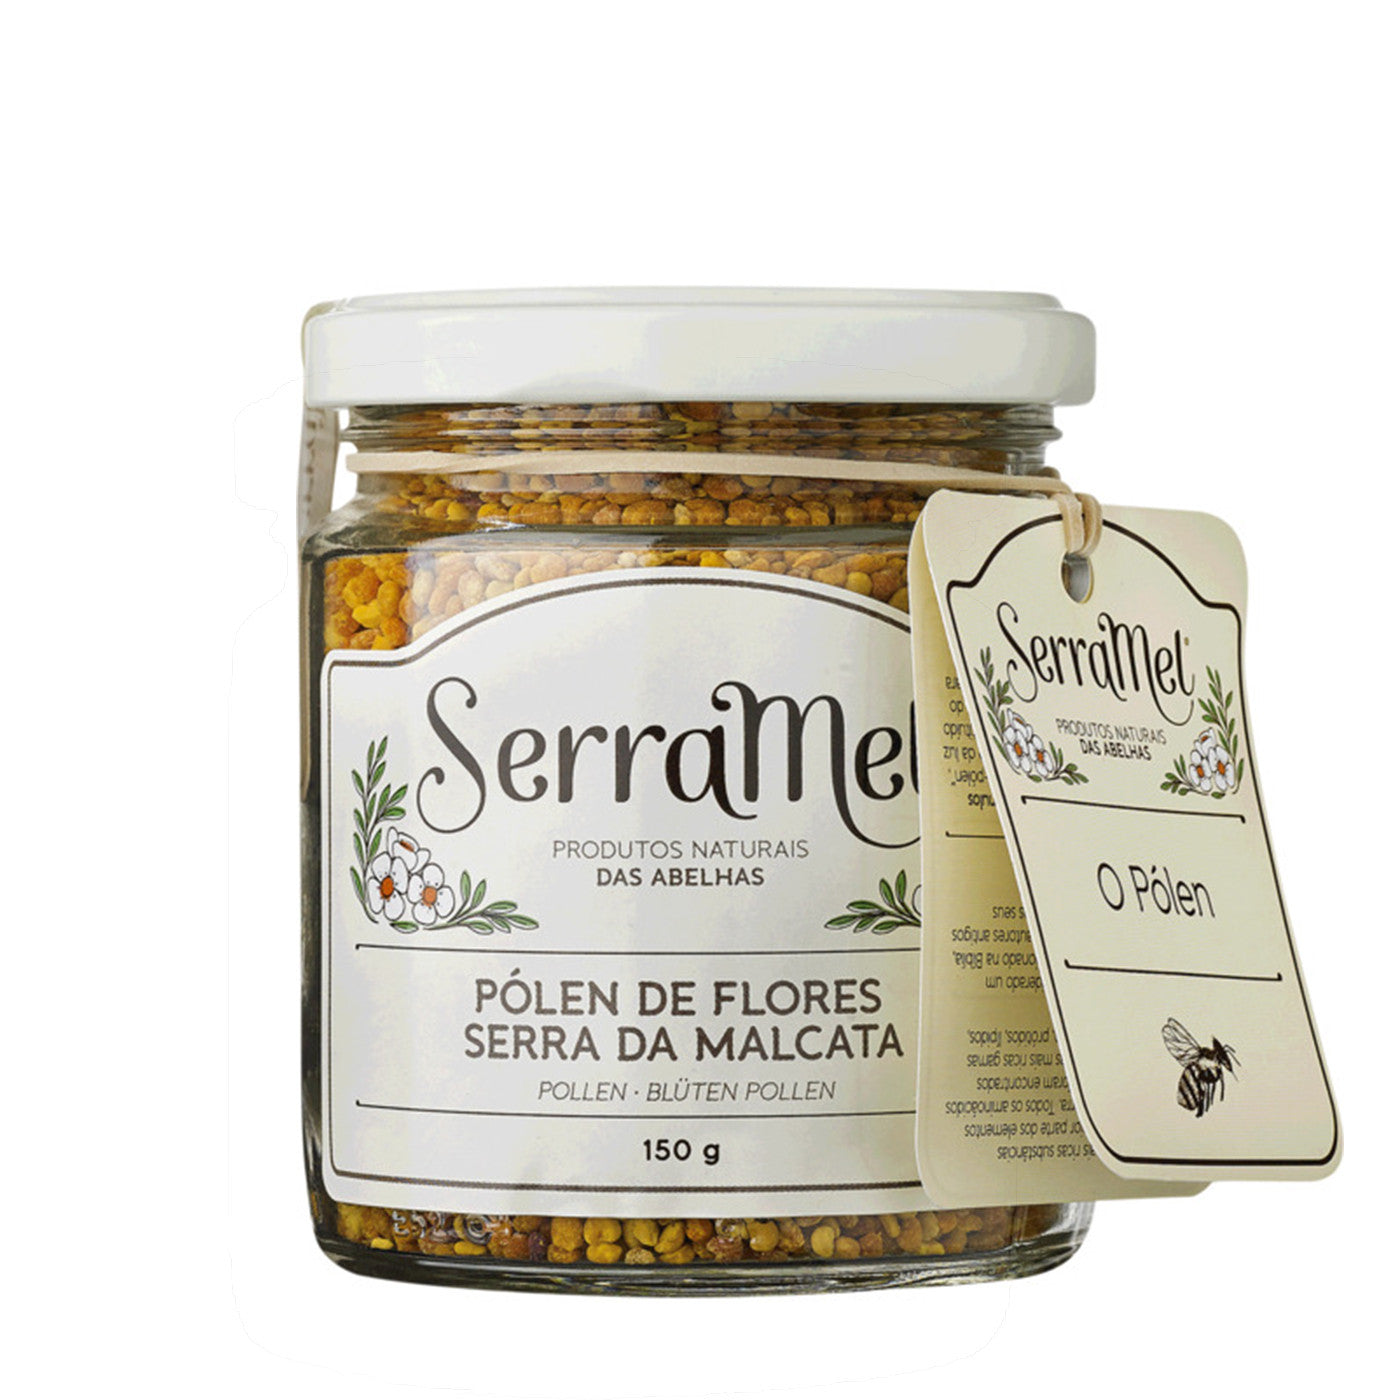 Bipollen granulat - Serramel